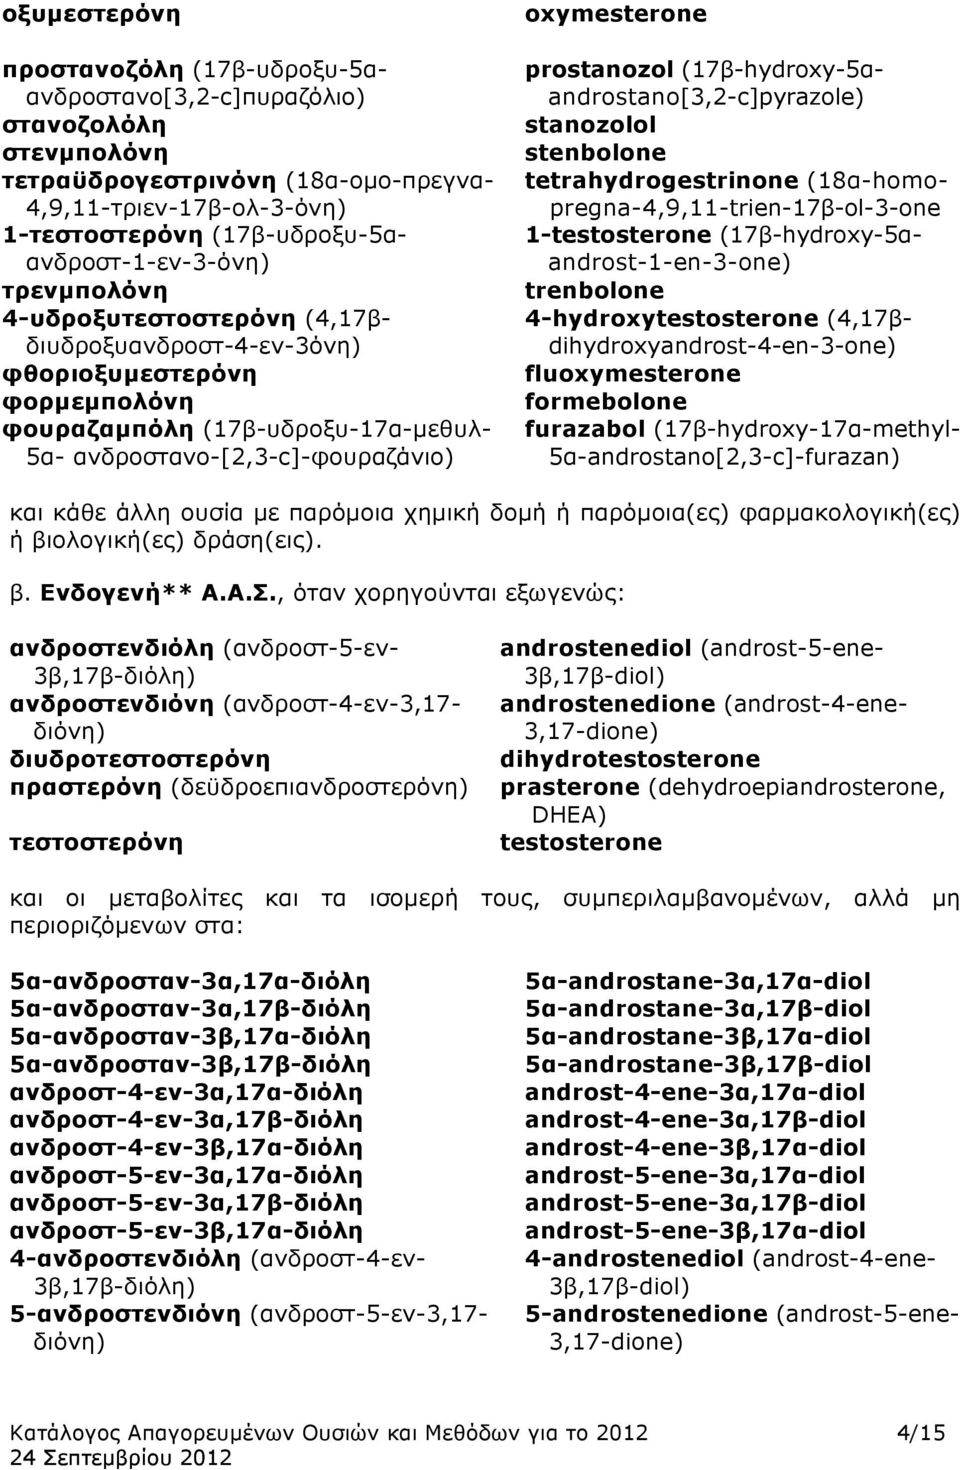 ανδροστανο-[2,3-c]-φουραζάνιο) oxymesterone prostanozol (17β-hydroxy-5αandrostano[3,2-c]pyrazole) stanozolol stenbolone tetrahydrogestrinone (18α-homopregna-4,9,11-trien-17β-ol-3-one 1-testosterone